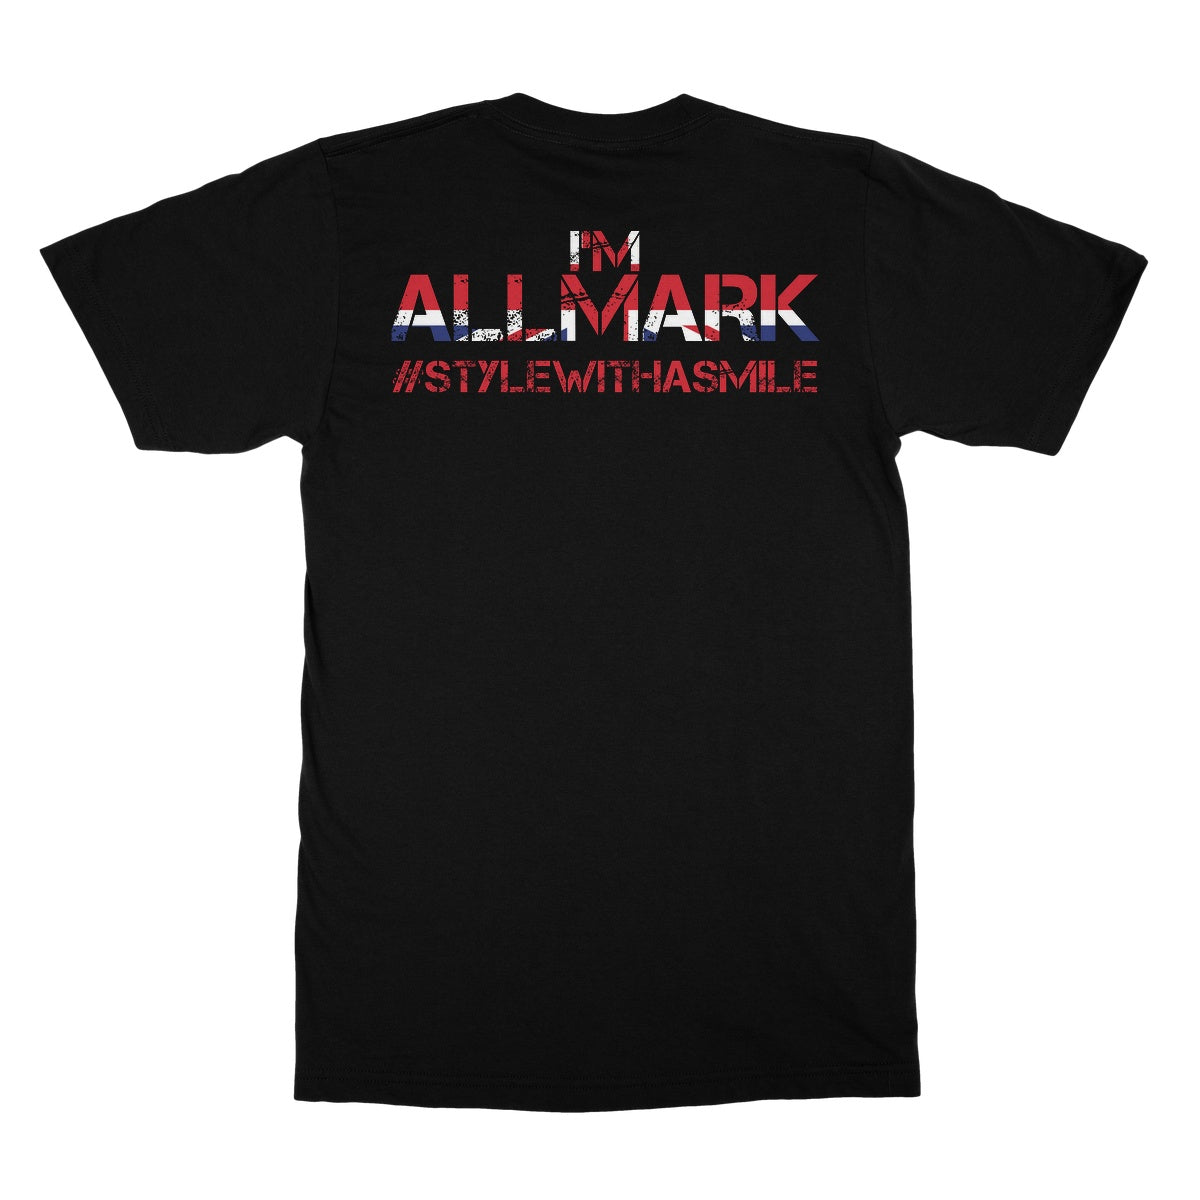 Dean Allmark Not A Mark! Softstyle T-Shirt